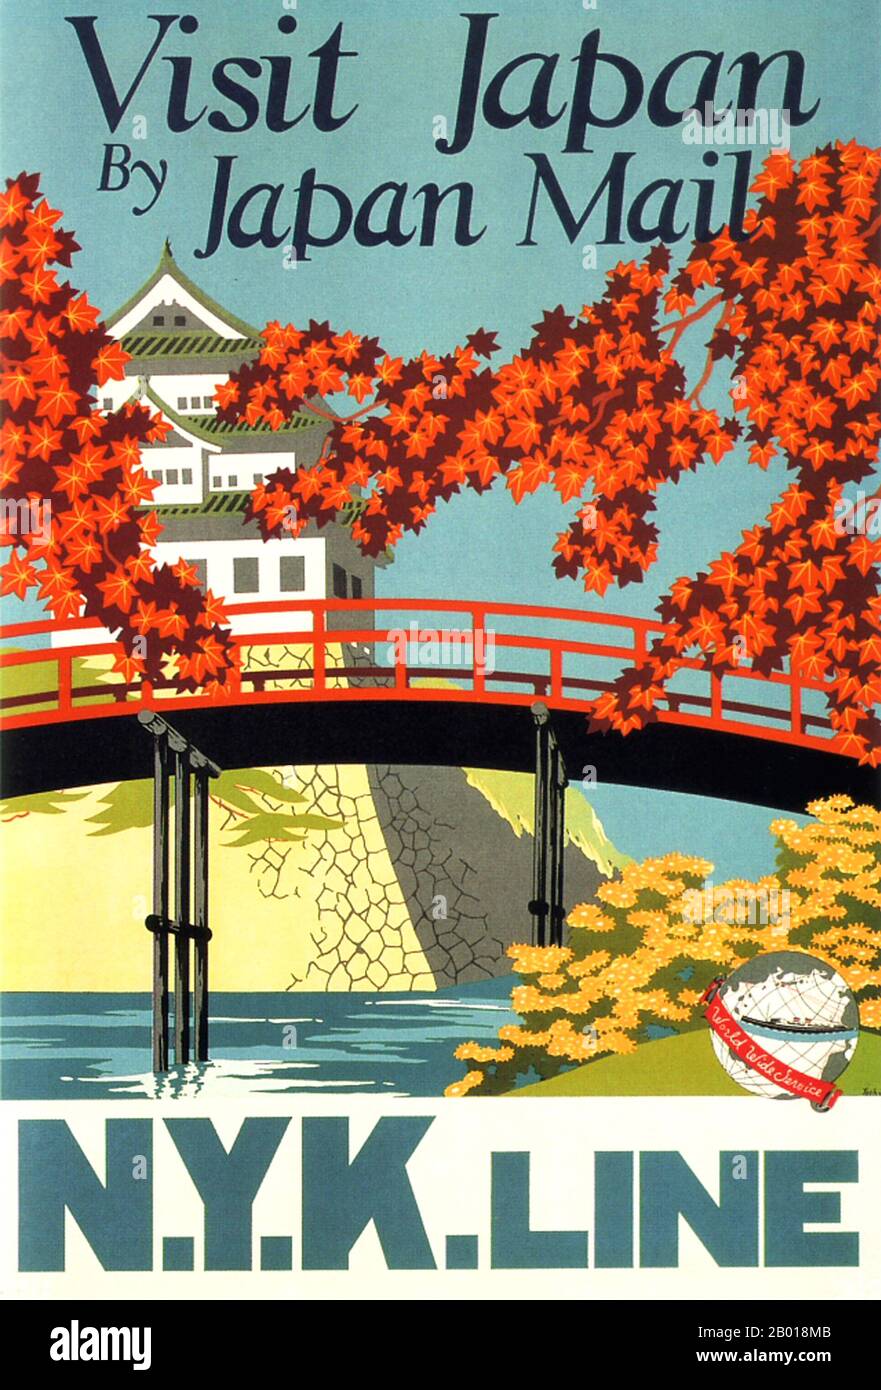 Japon : affiche publicitaire pour la compagnie de bateaux à vapeur NYK Line, 1916. La fleur de cerisier et le château incarnent l'esthétique du Japon dans cette affiche à vapeur de la ligne NYK. Banque D'Images